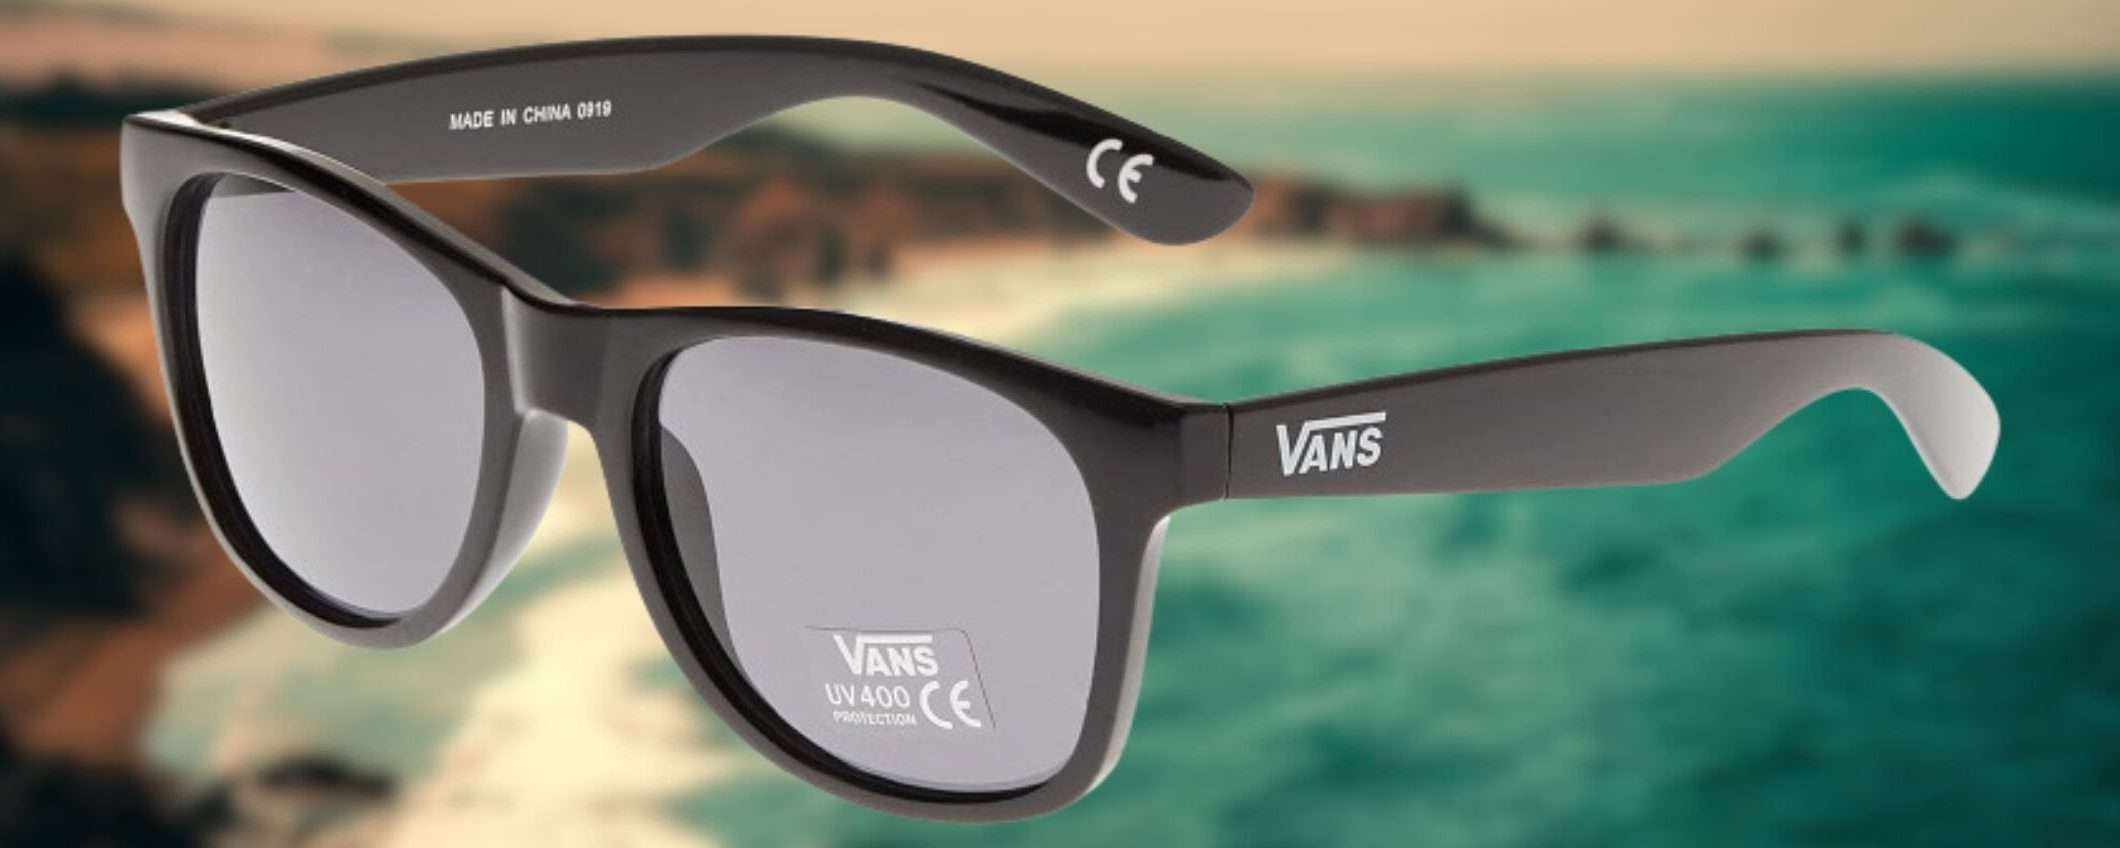 Solo 12,95€ per gli occhiali da sole VANS su Amazon: sono SPETTACOLARI